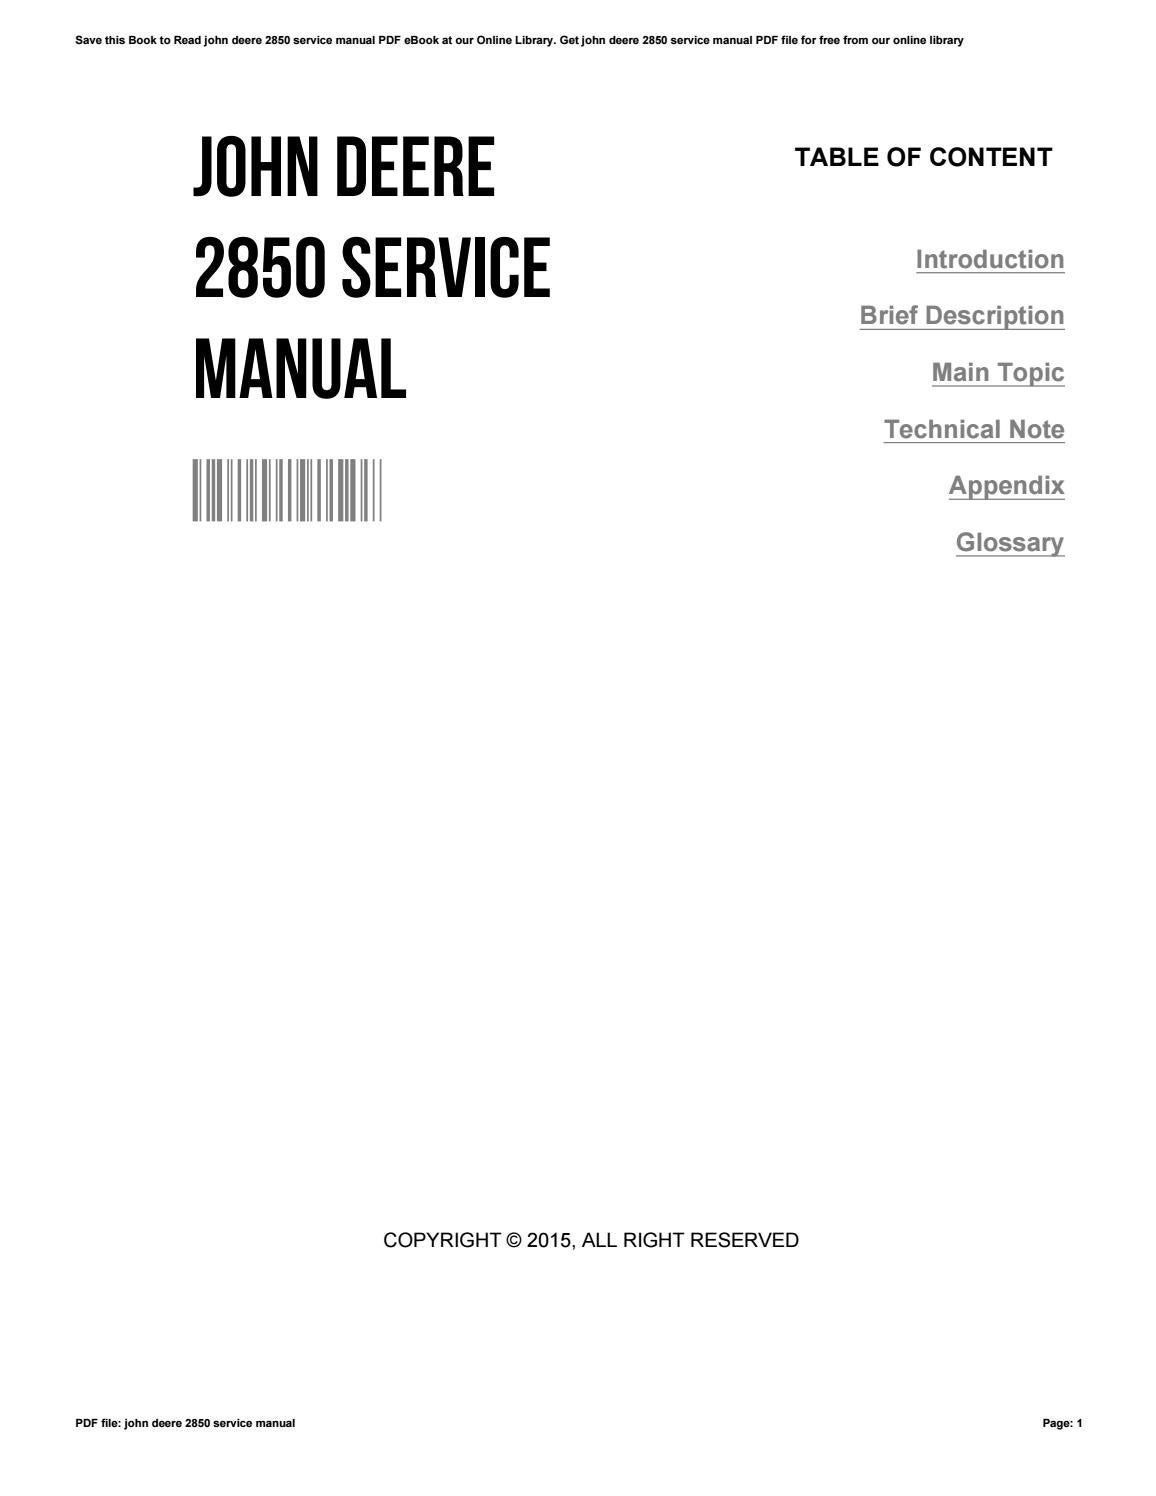 John deere 2850 workshop manual